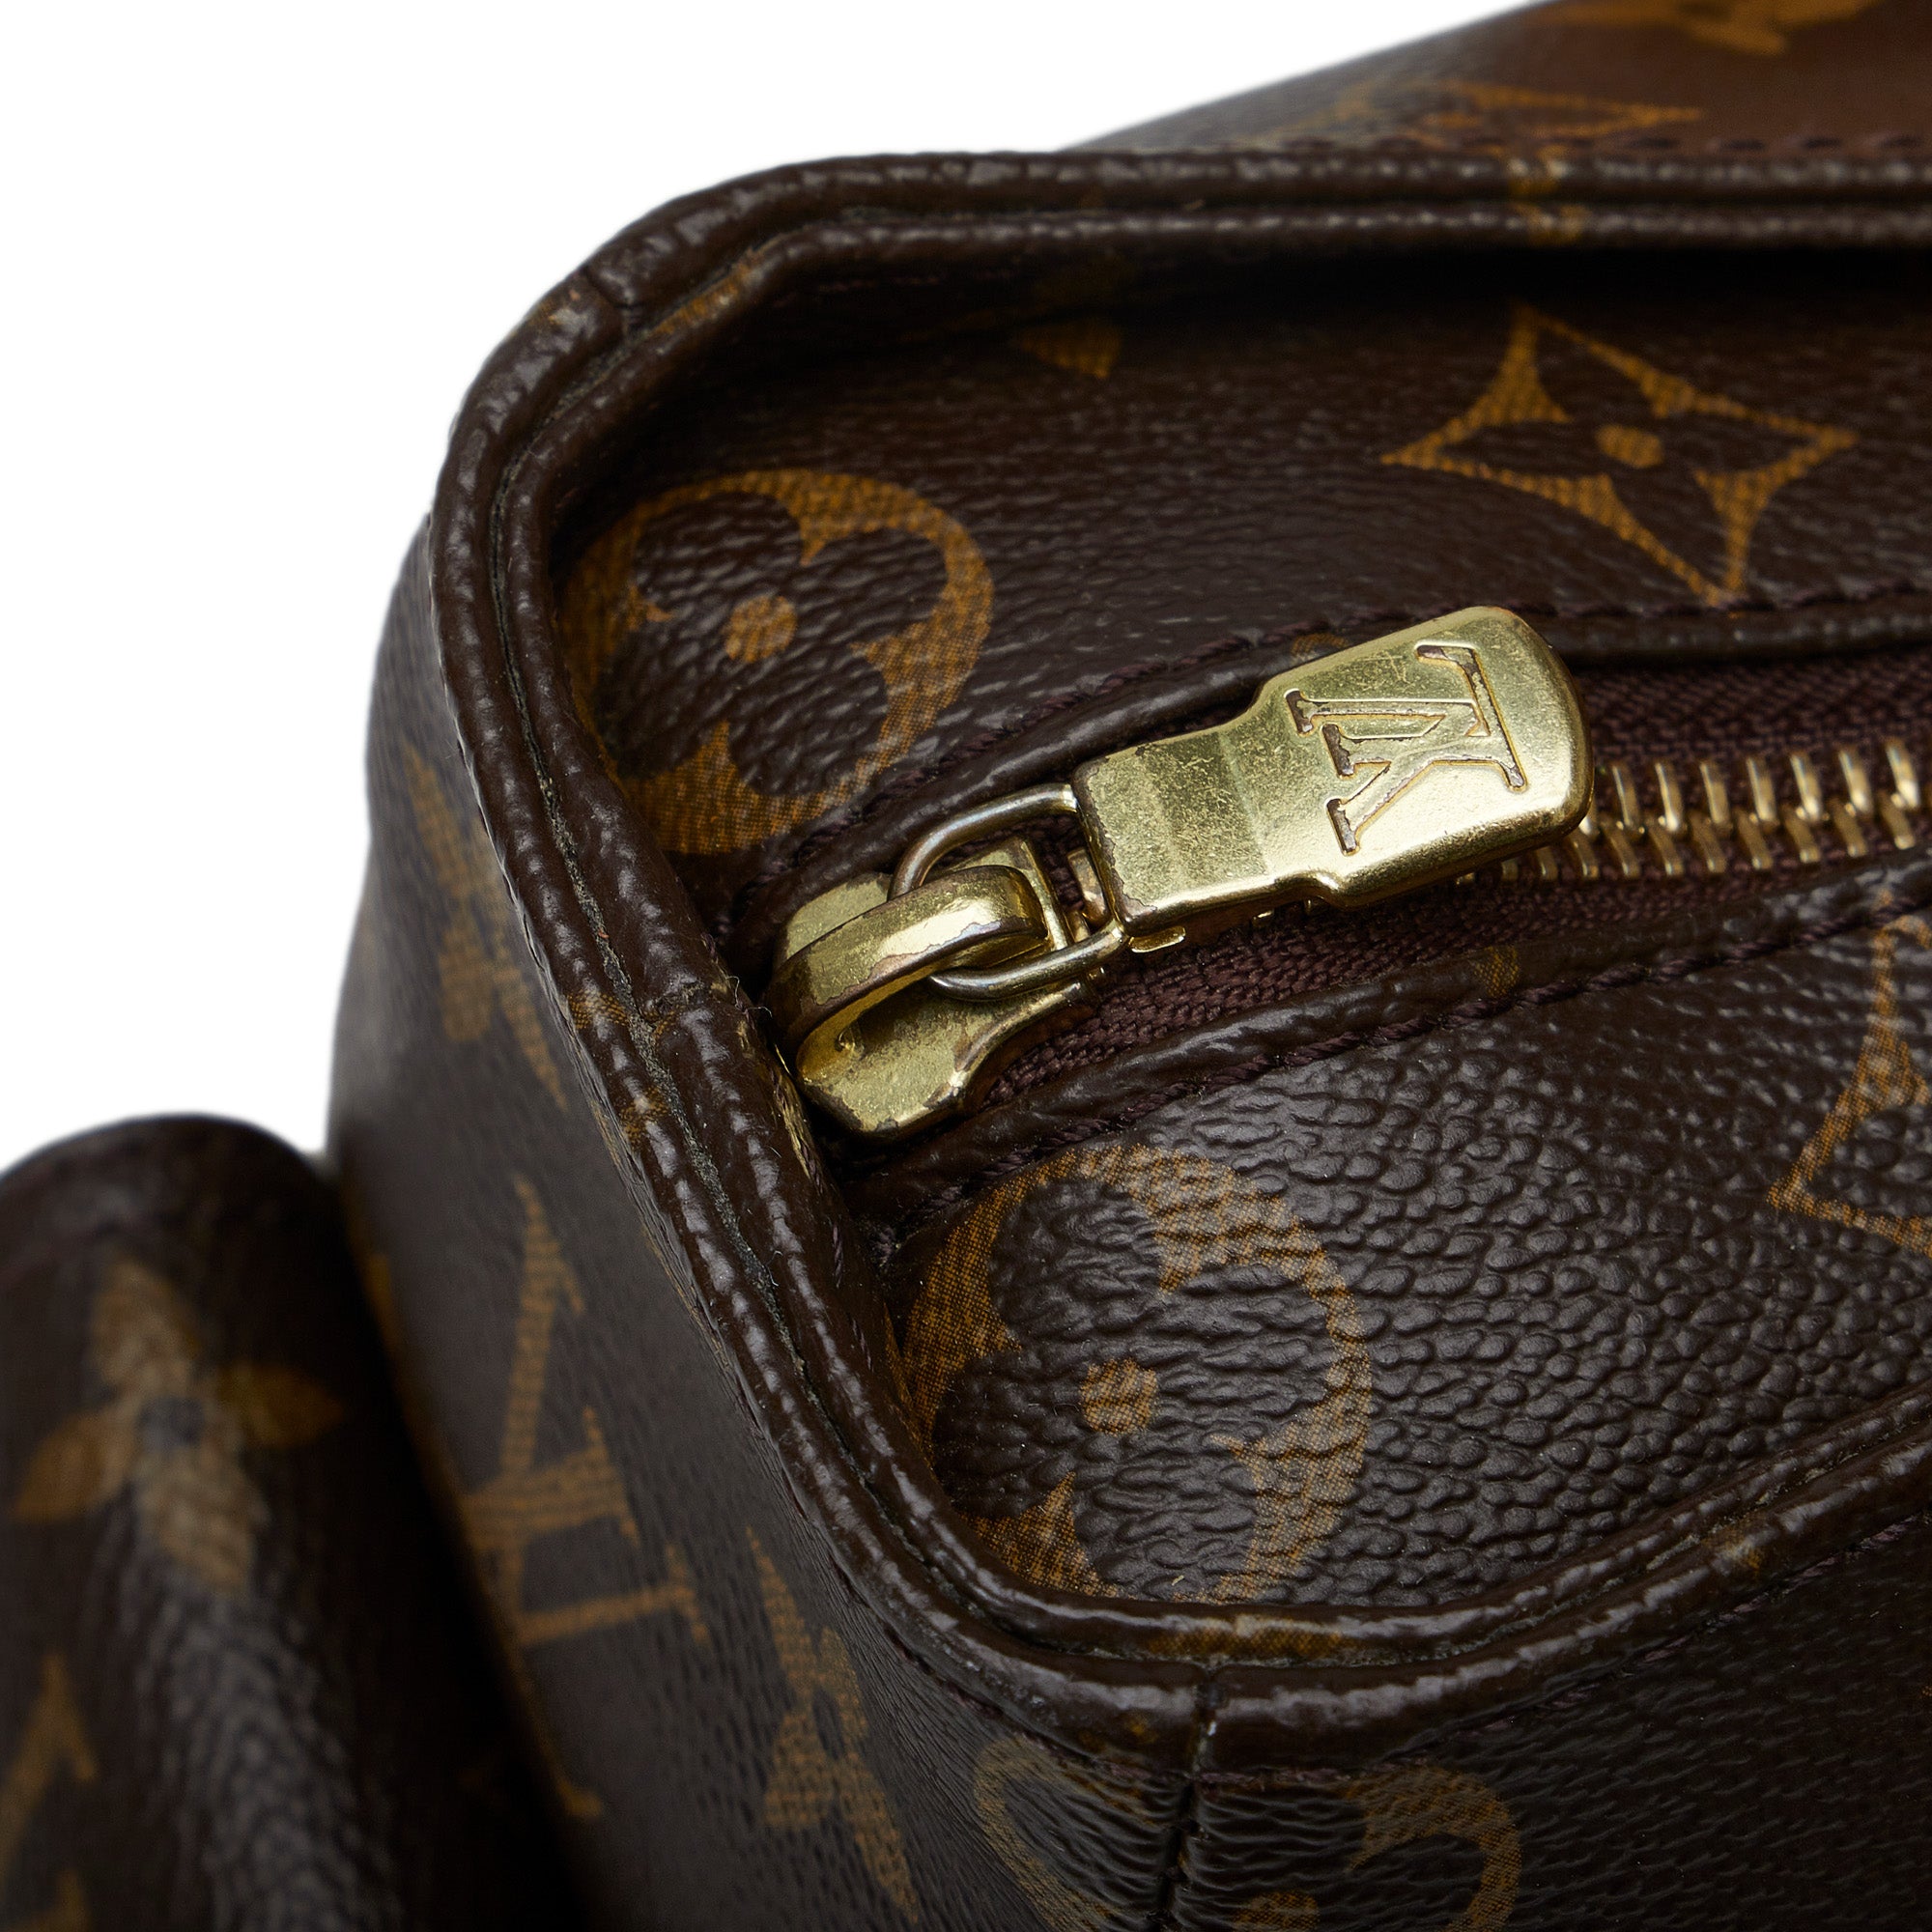 Multipli cité cloth handbag Louis Vuitton Brown in Cloth - 13219325